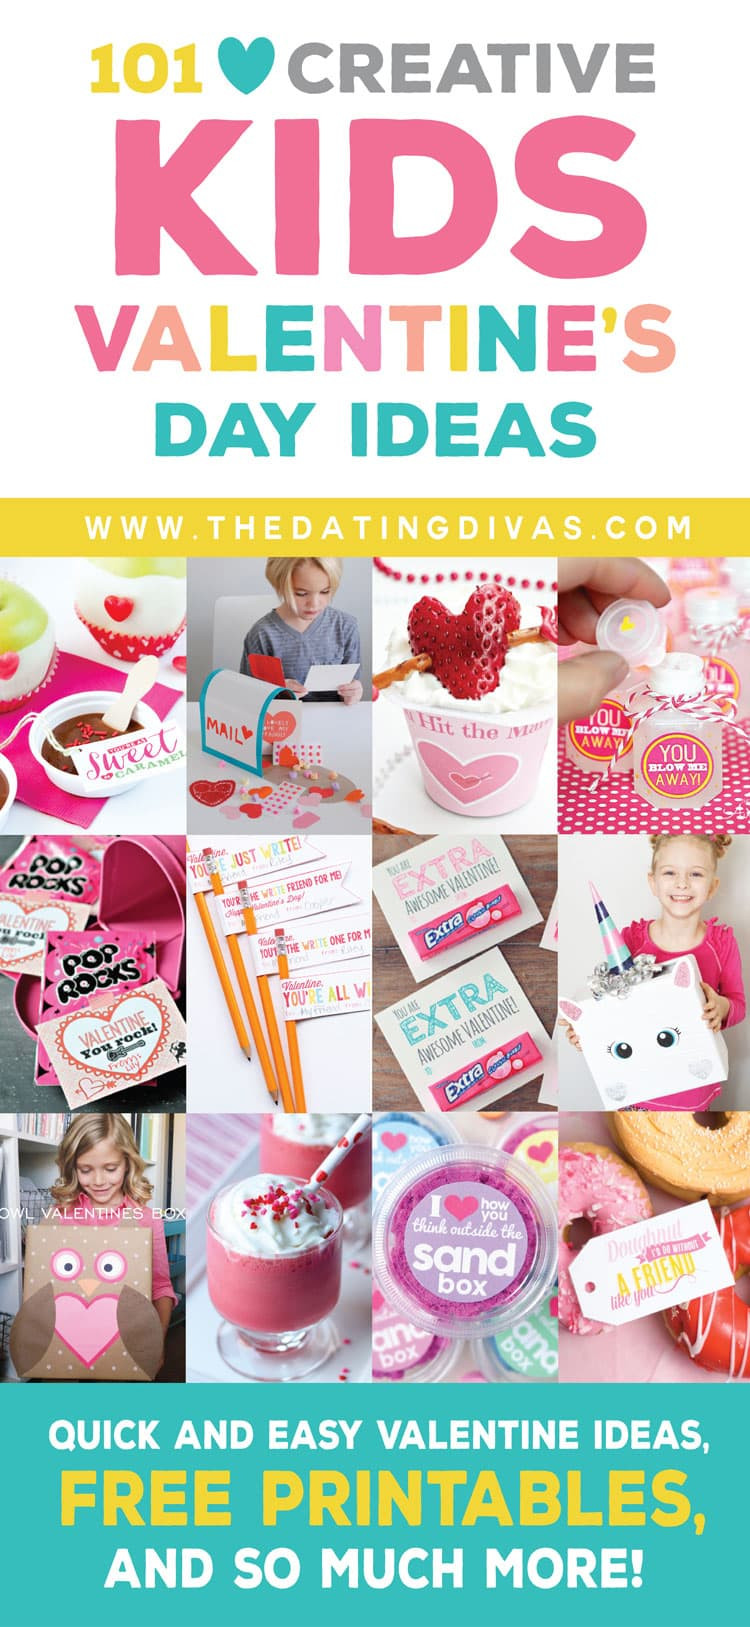 Valentines Day Ideas 2016
 100 Kids Valentine s Ideas The Dating Divas